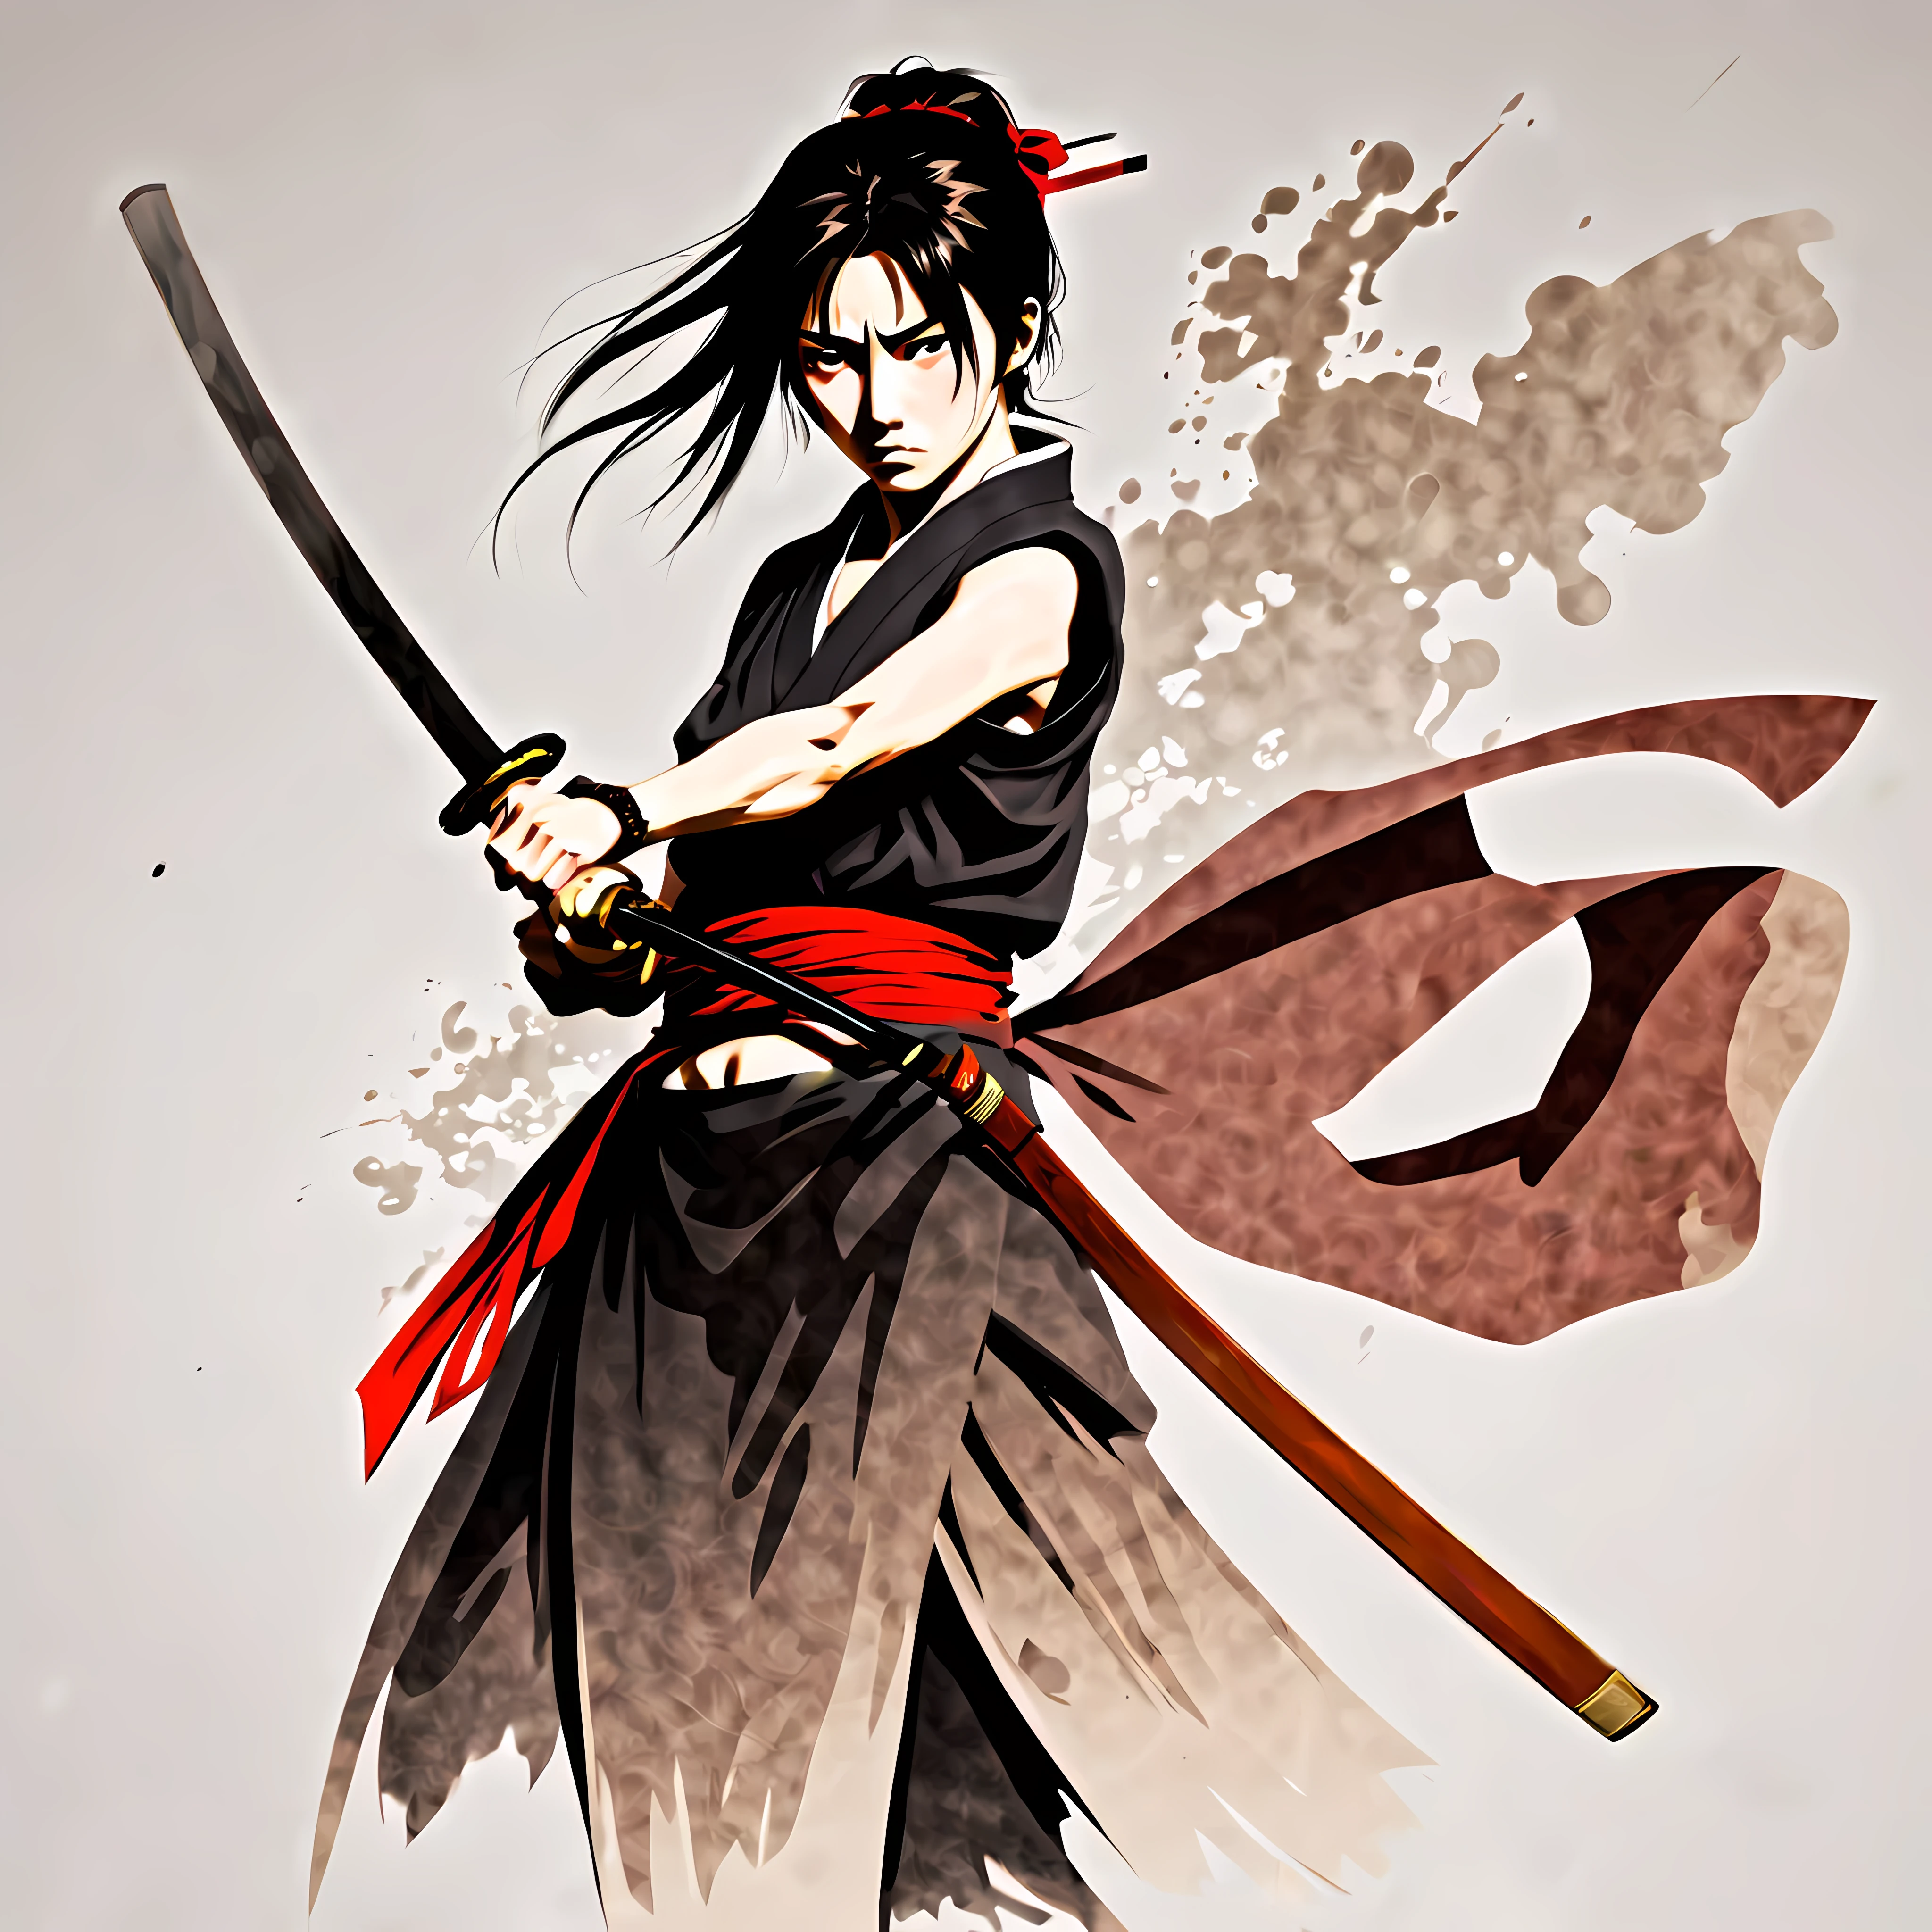 ((Estilo de anime Rurouni Kenshin:1.3). ((violento_expressão:1.2), ((Samurai Feminino):1.2), ((ampulheta_figura):1.1). ((postura de luta):1.1), | The figura is depicted with smooth lines, expressando emoções e postura através do contraste da densidade da tinta. O fundo é minimalista, enfatizando a luz, sombra, e percepção espacial.